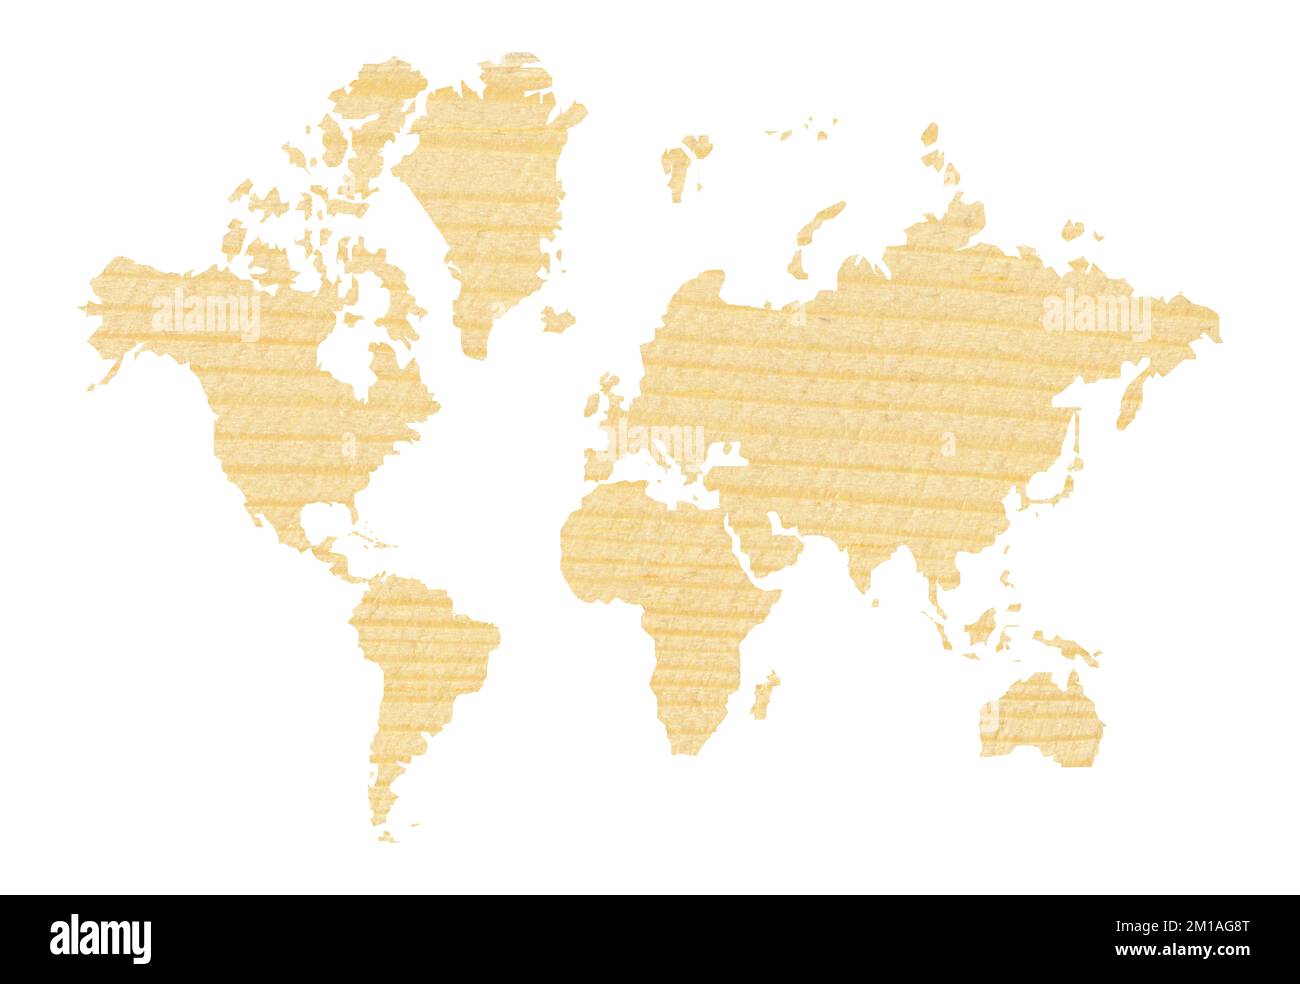 Carte du monde décorative et détaillée coupée de pin à texture bois, carte du monde transparente montrant les continents, isolée sur fond blanc Banque D'Images